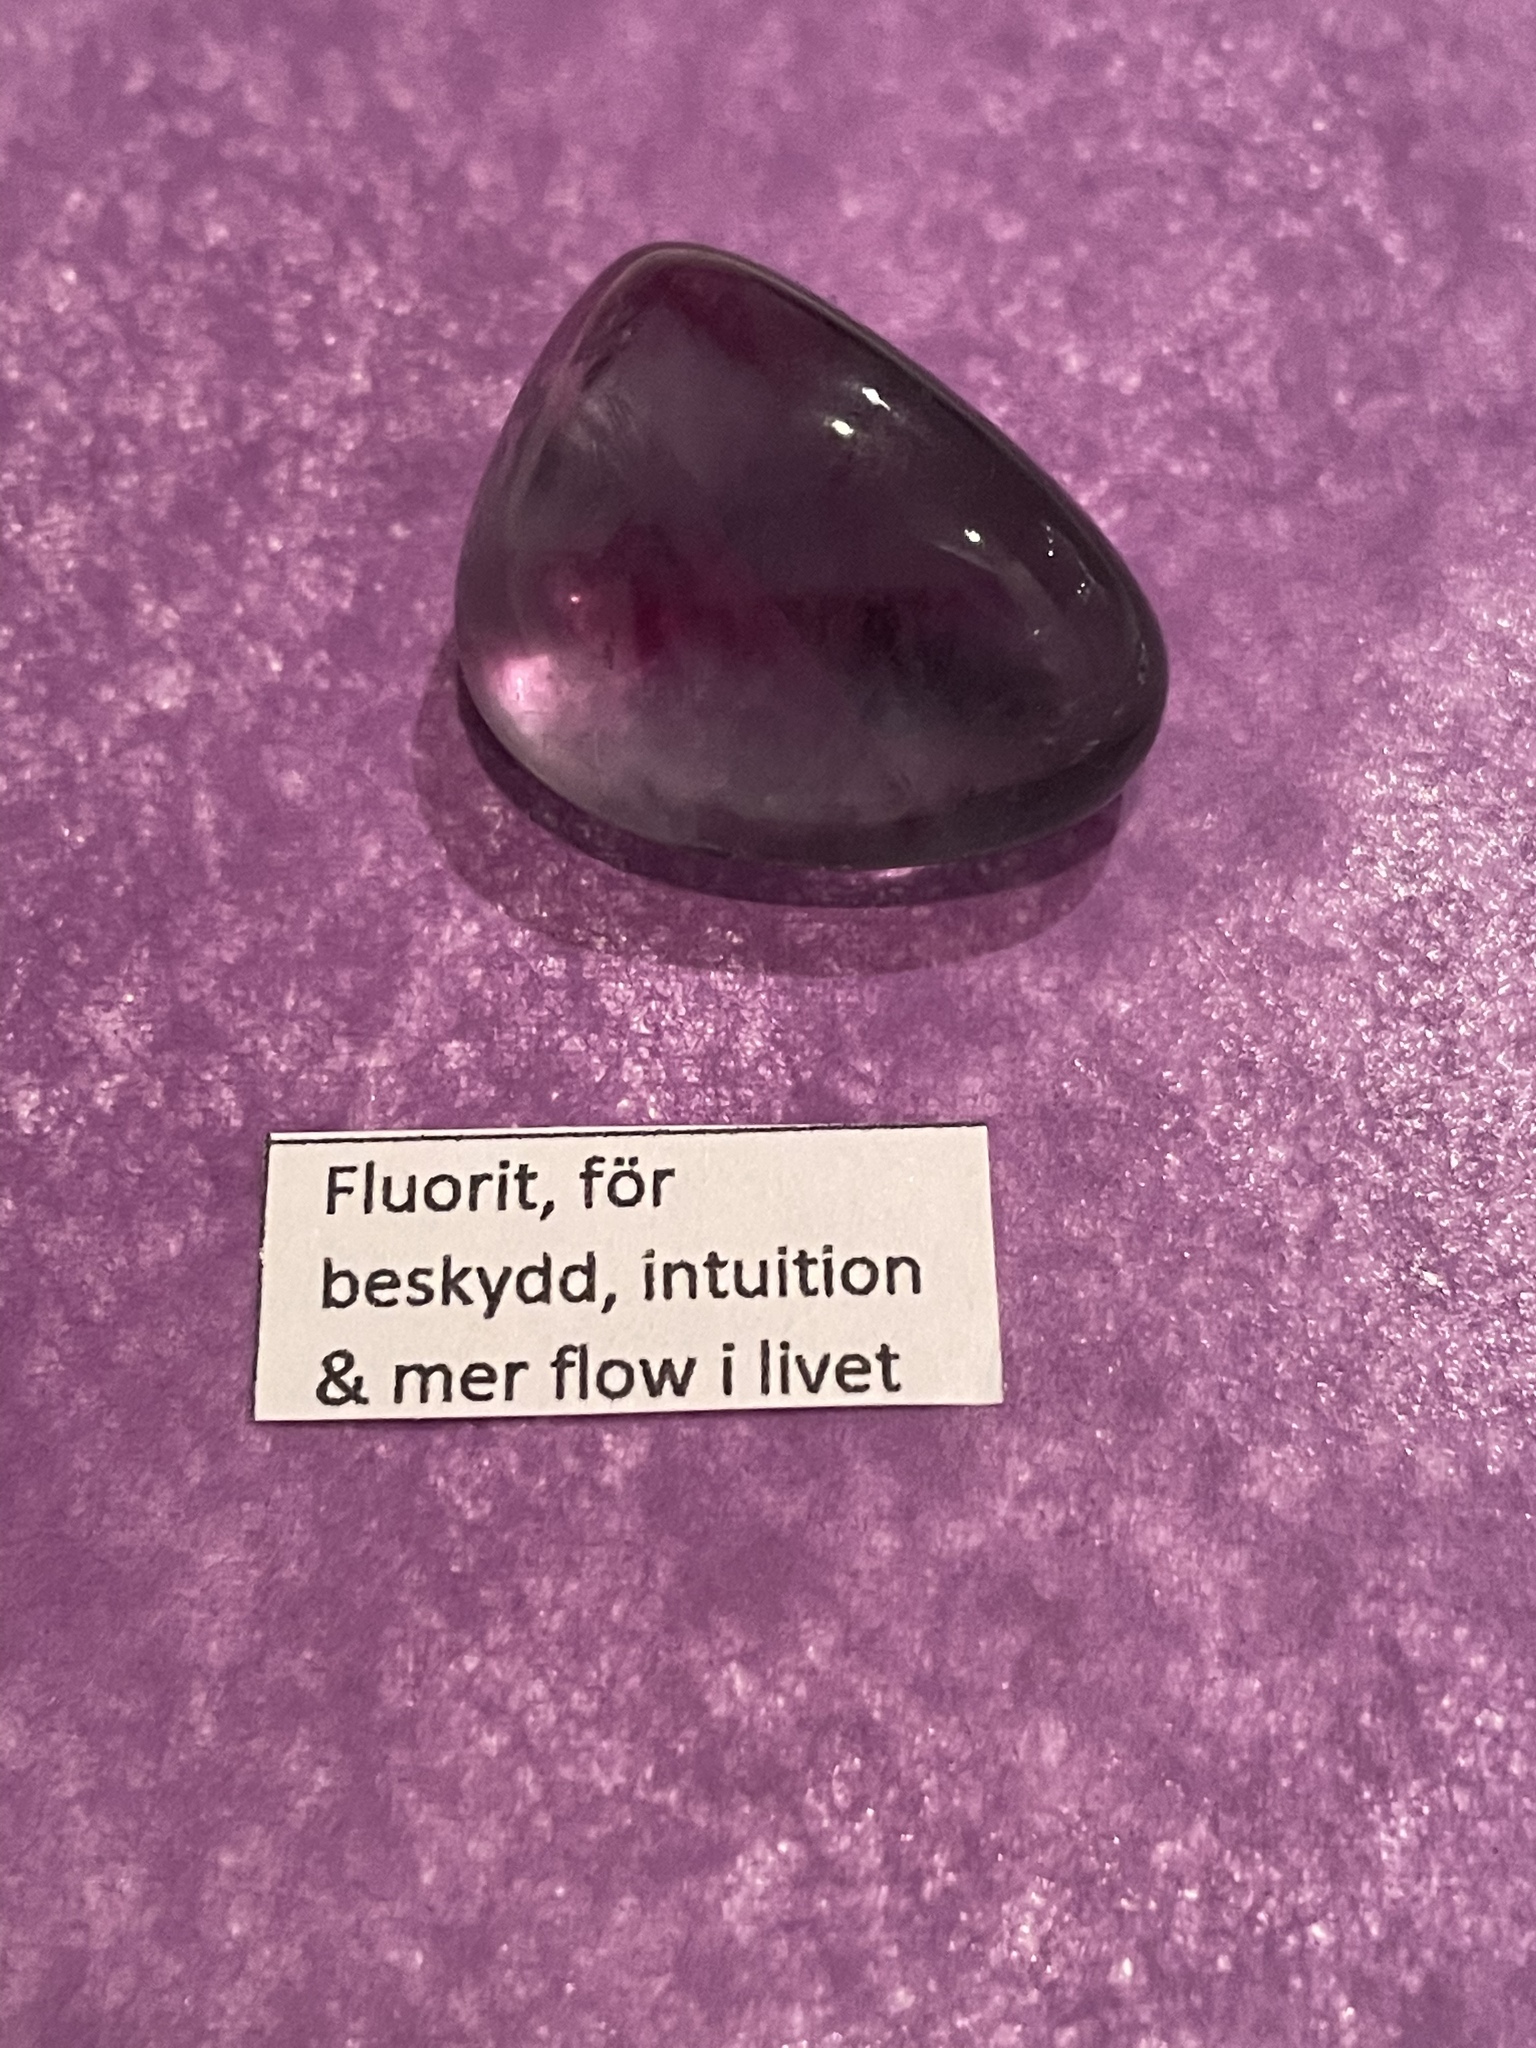 bilden visar en lila fluorit som visar en av kristallsorterna i adventskalendern